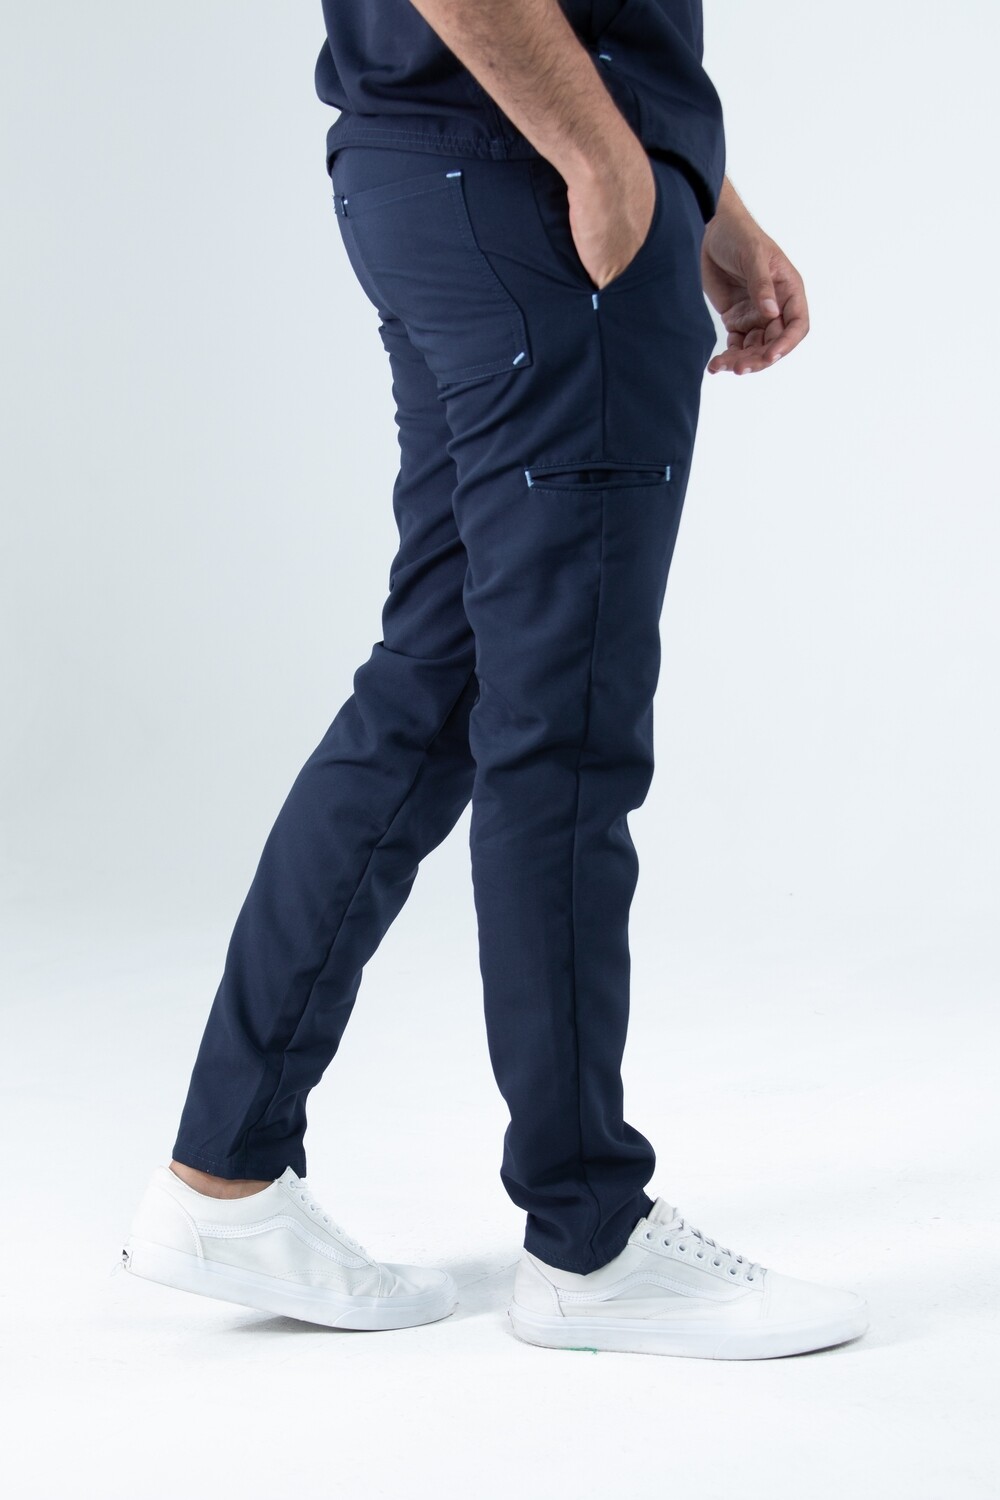 Pantalón hombre bolsillos laterales cinta ajustable navy y contrastes